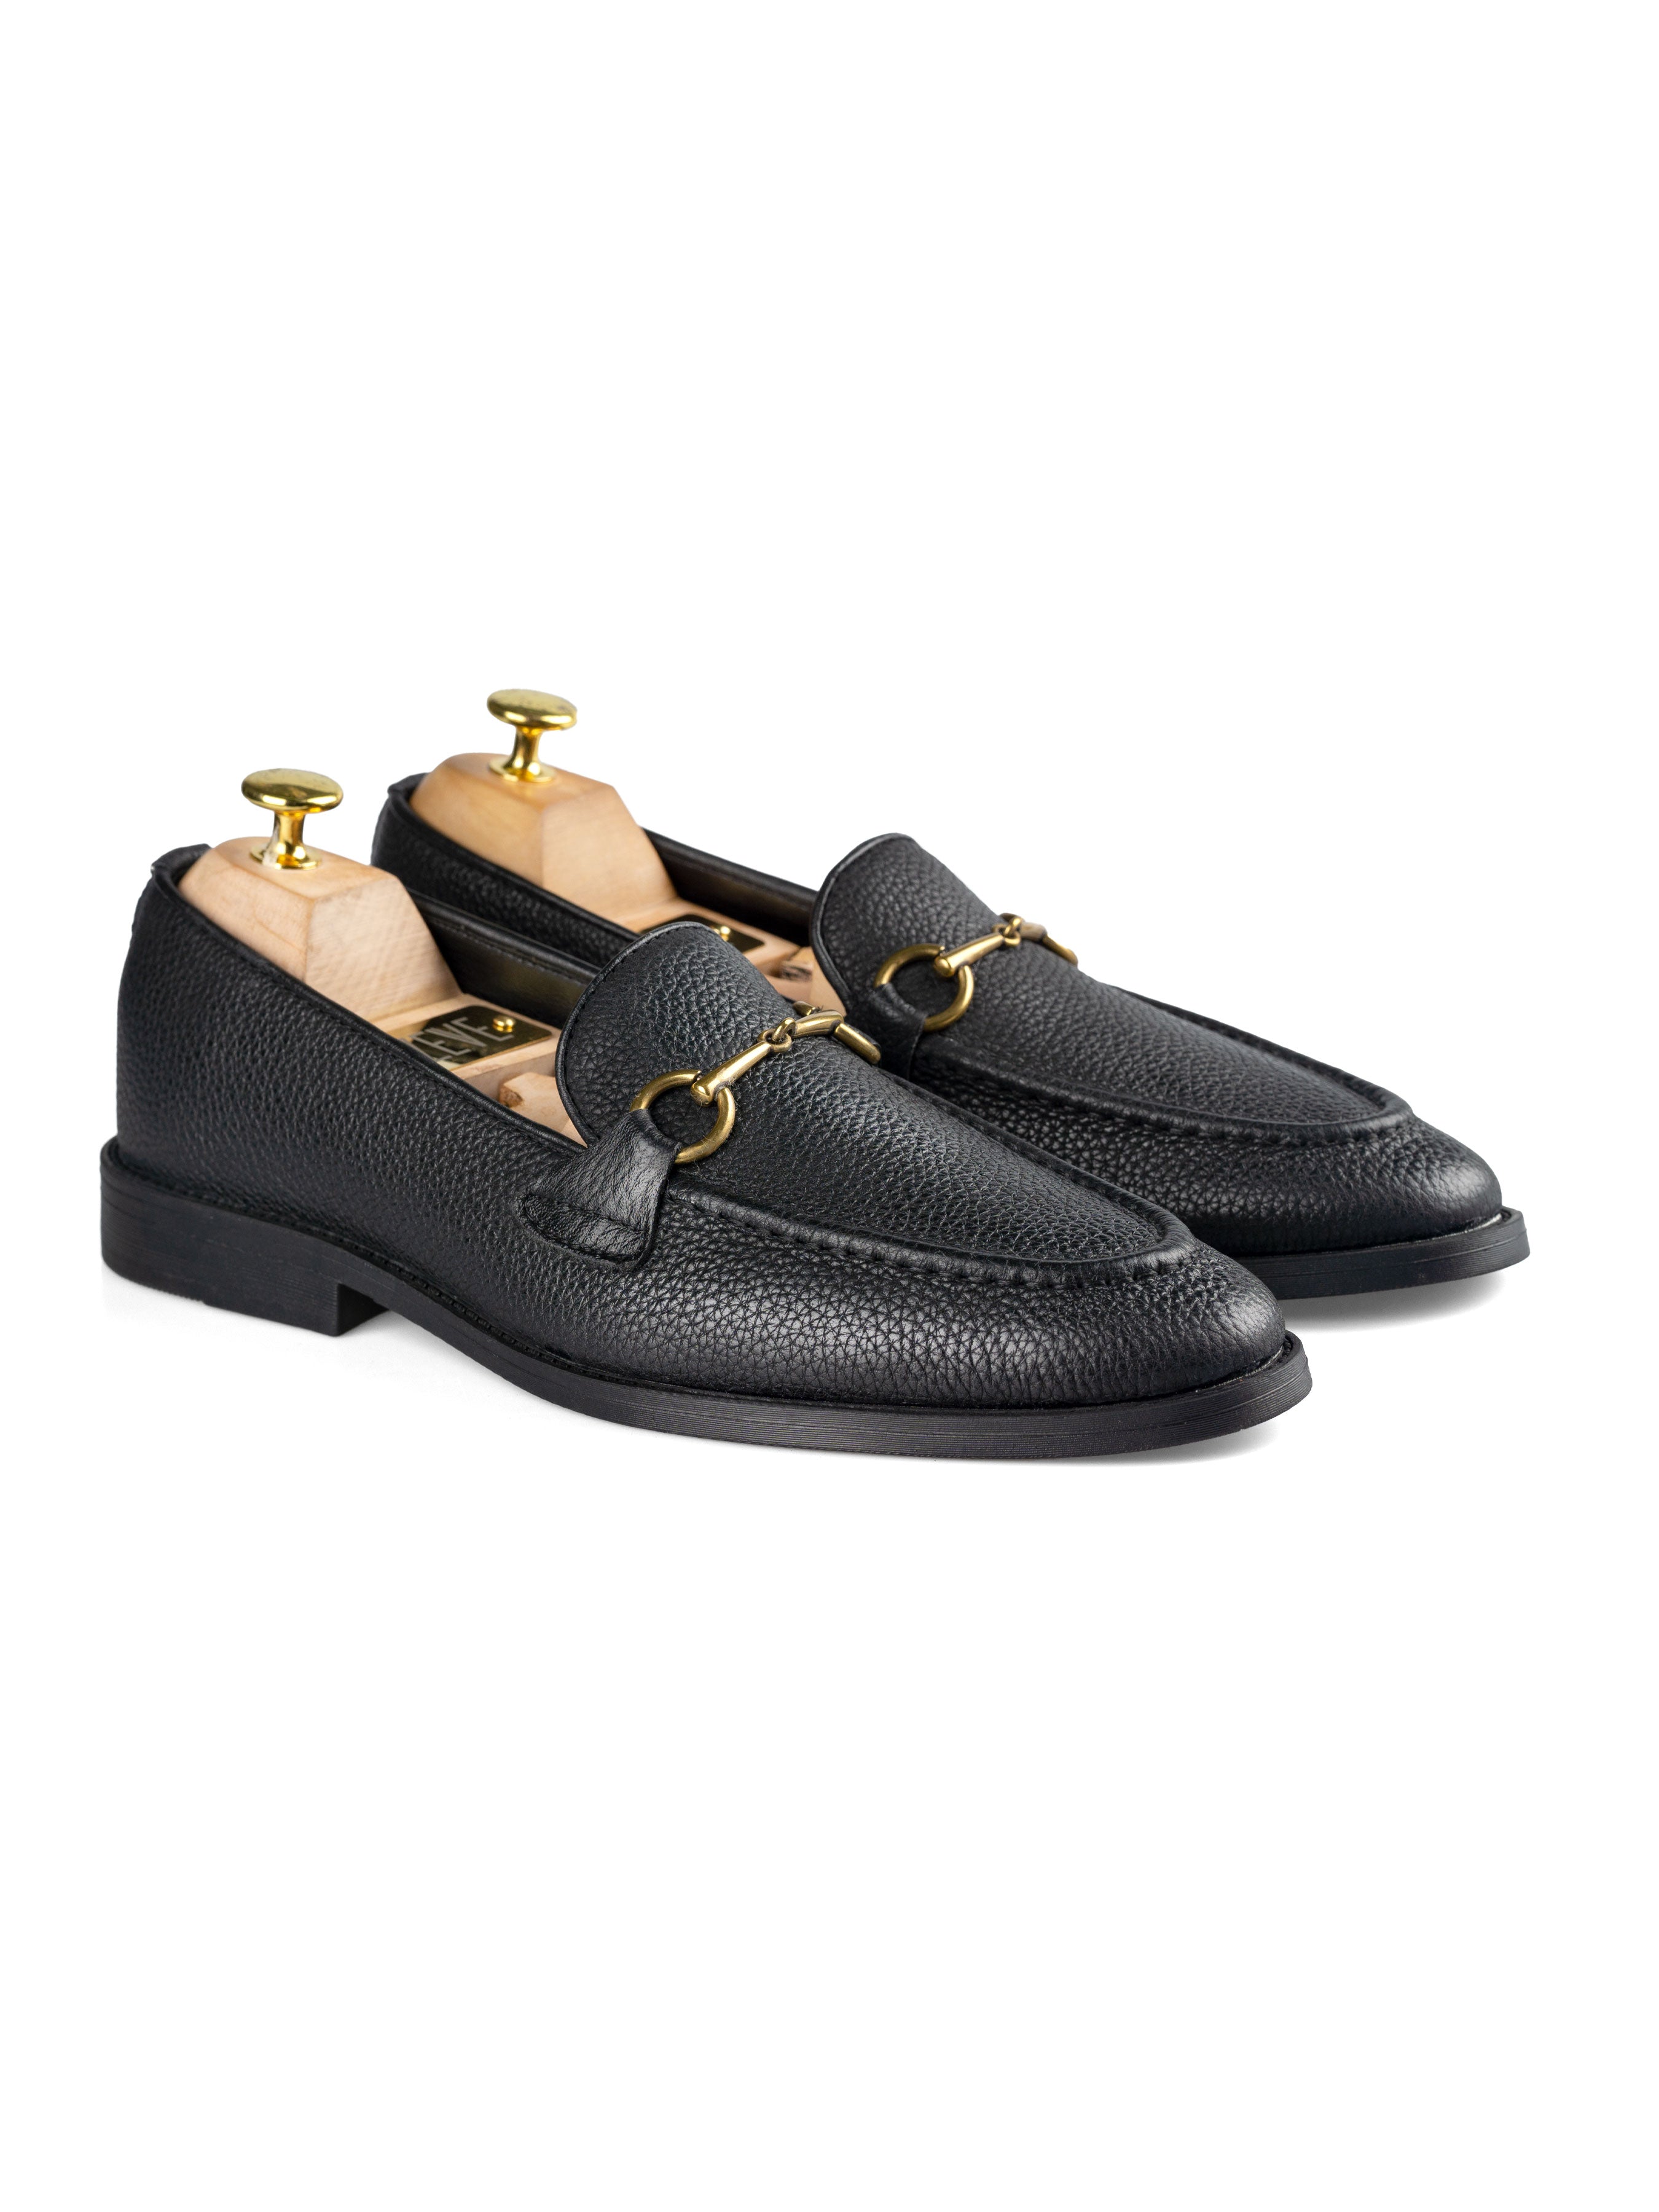 Horsebit Buckle Loafer - Black Pebble Grain Leather (Flexi-Sole) - Zeve Shoes